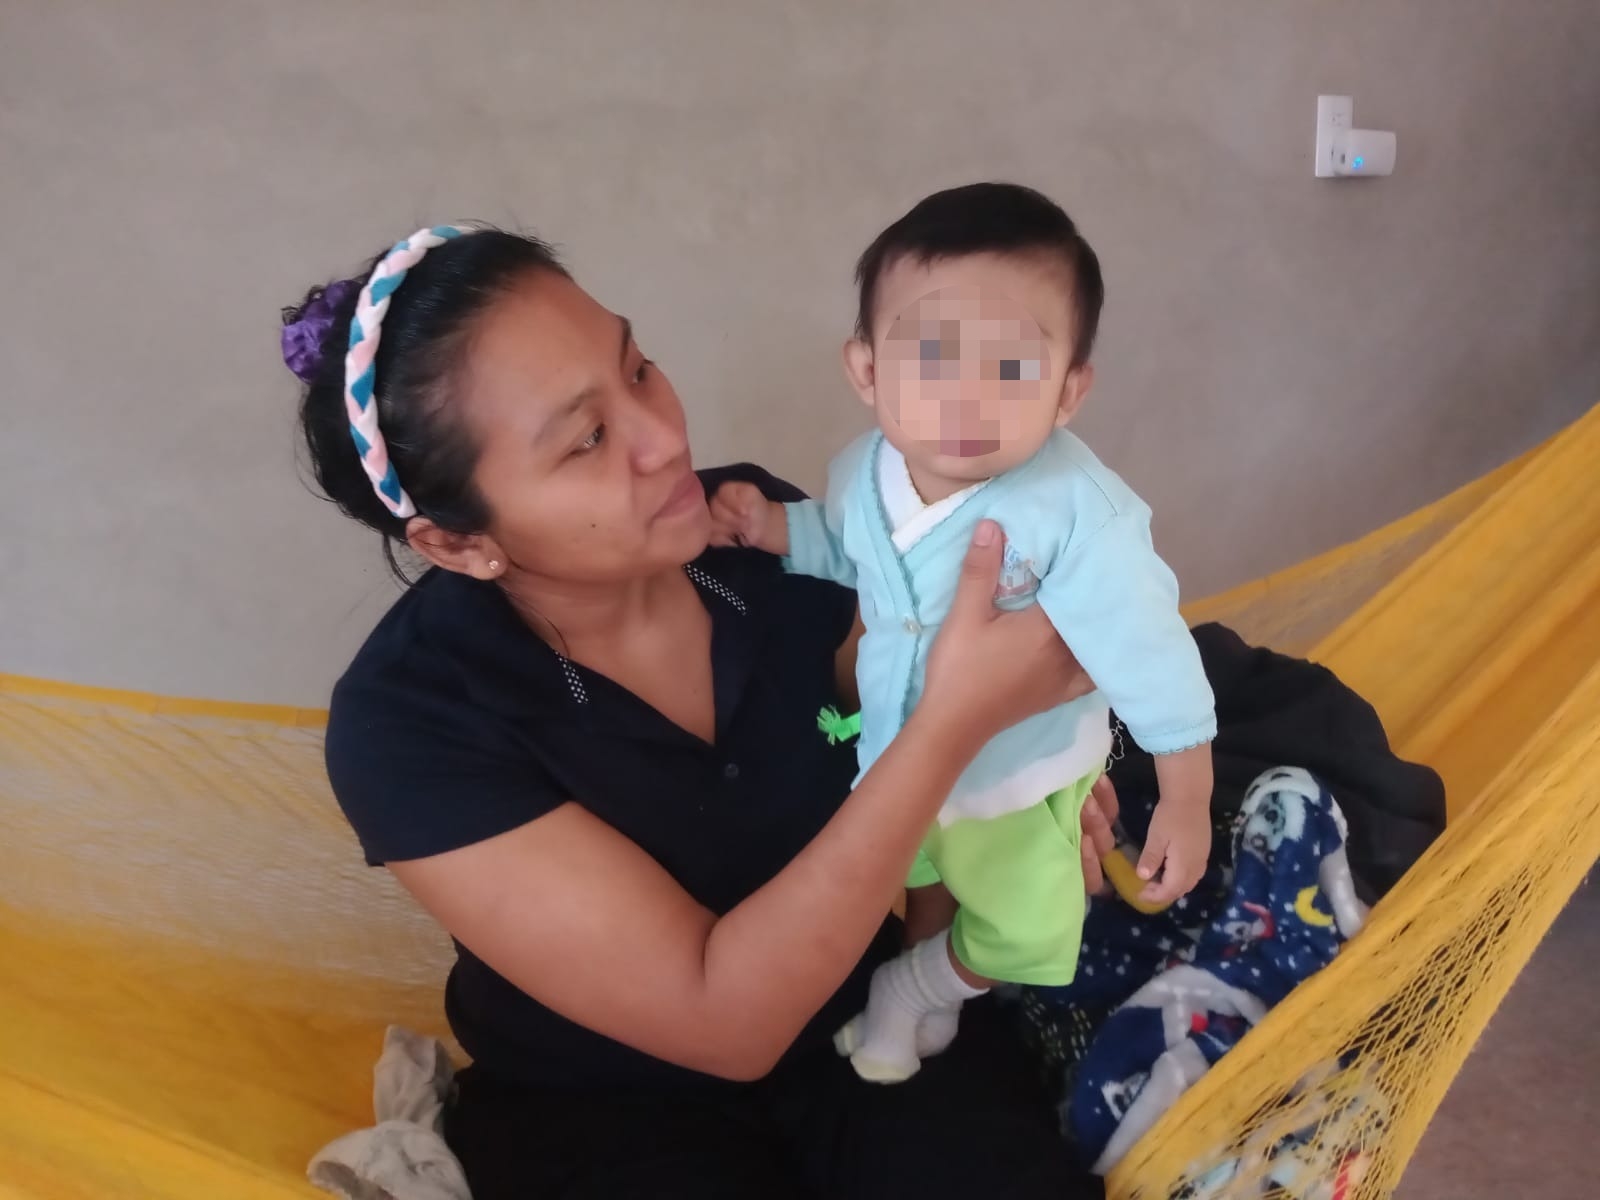 Kaleb con las horas contadas: Padres piden ayuda urgente para el bebé en Hopelchén, Campeche